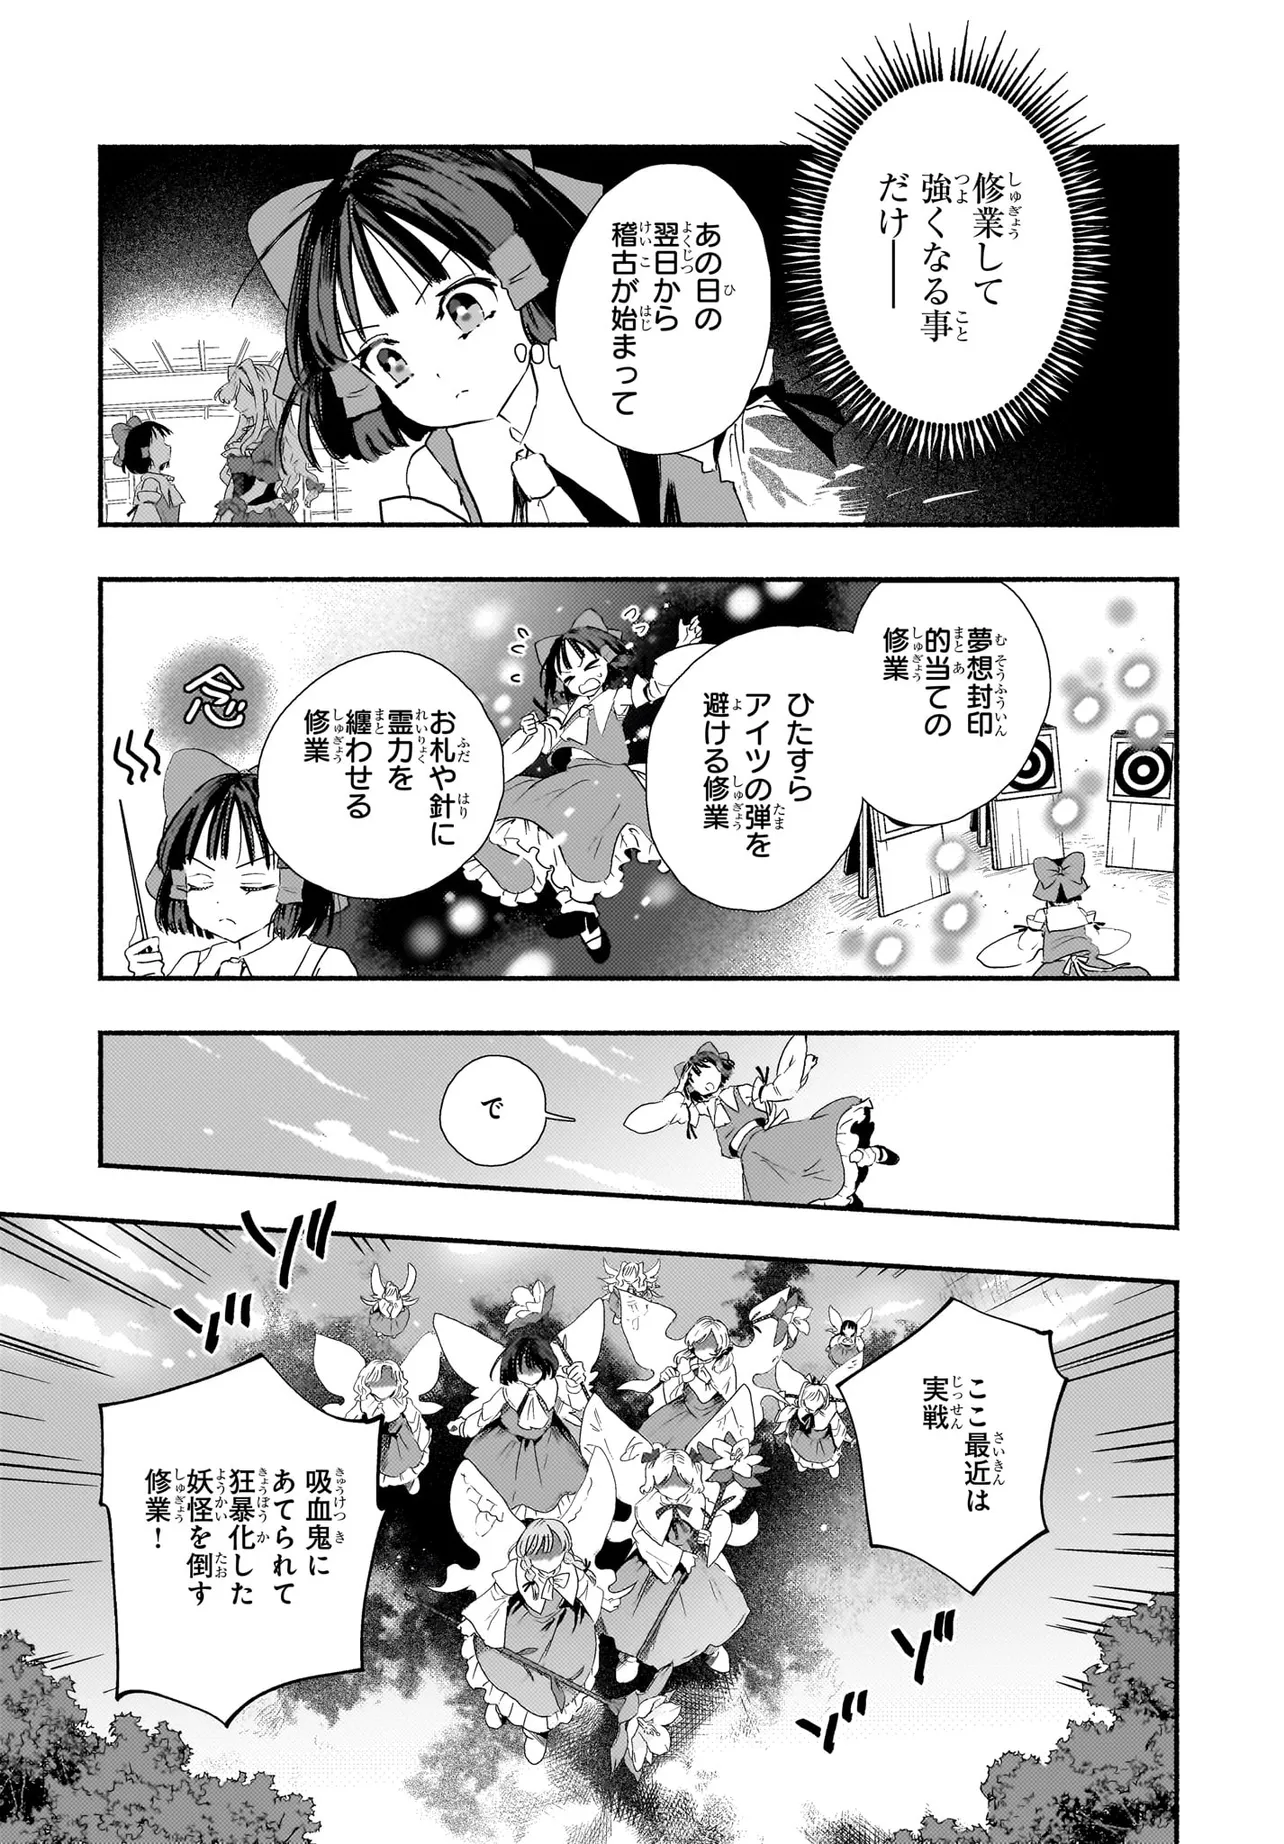 SPELL (AZUMA Aya) - Chapter 3 - Page 6